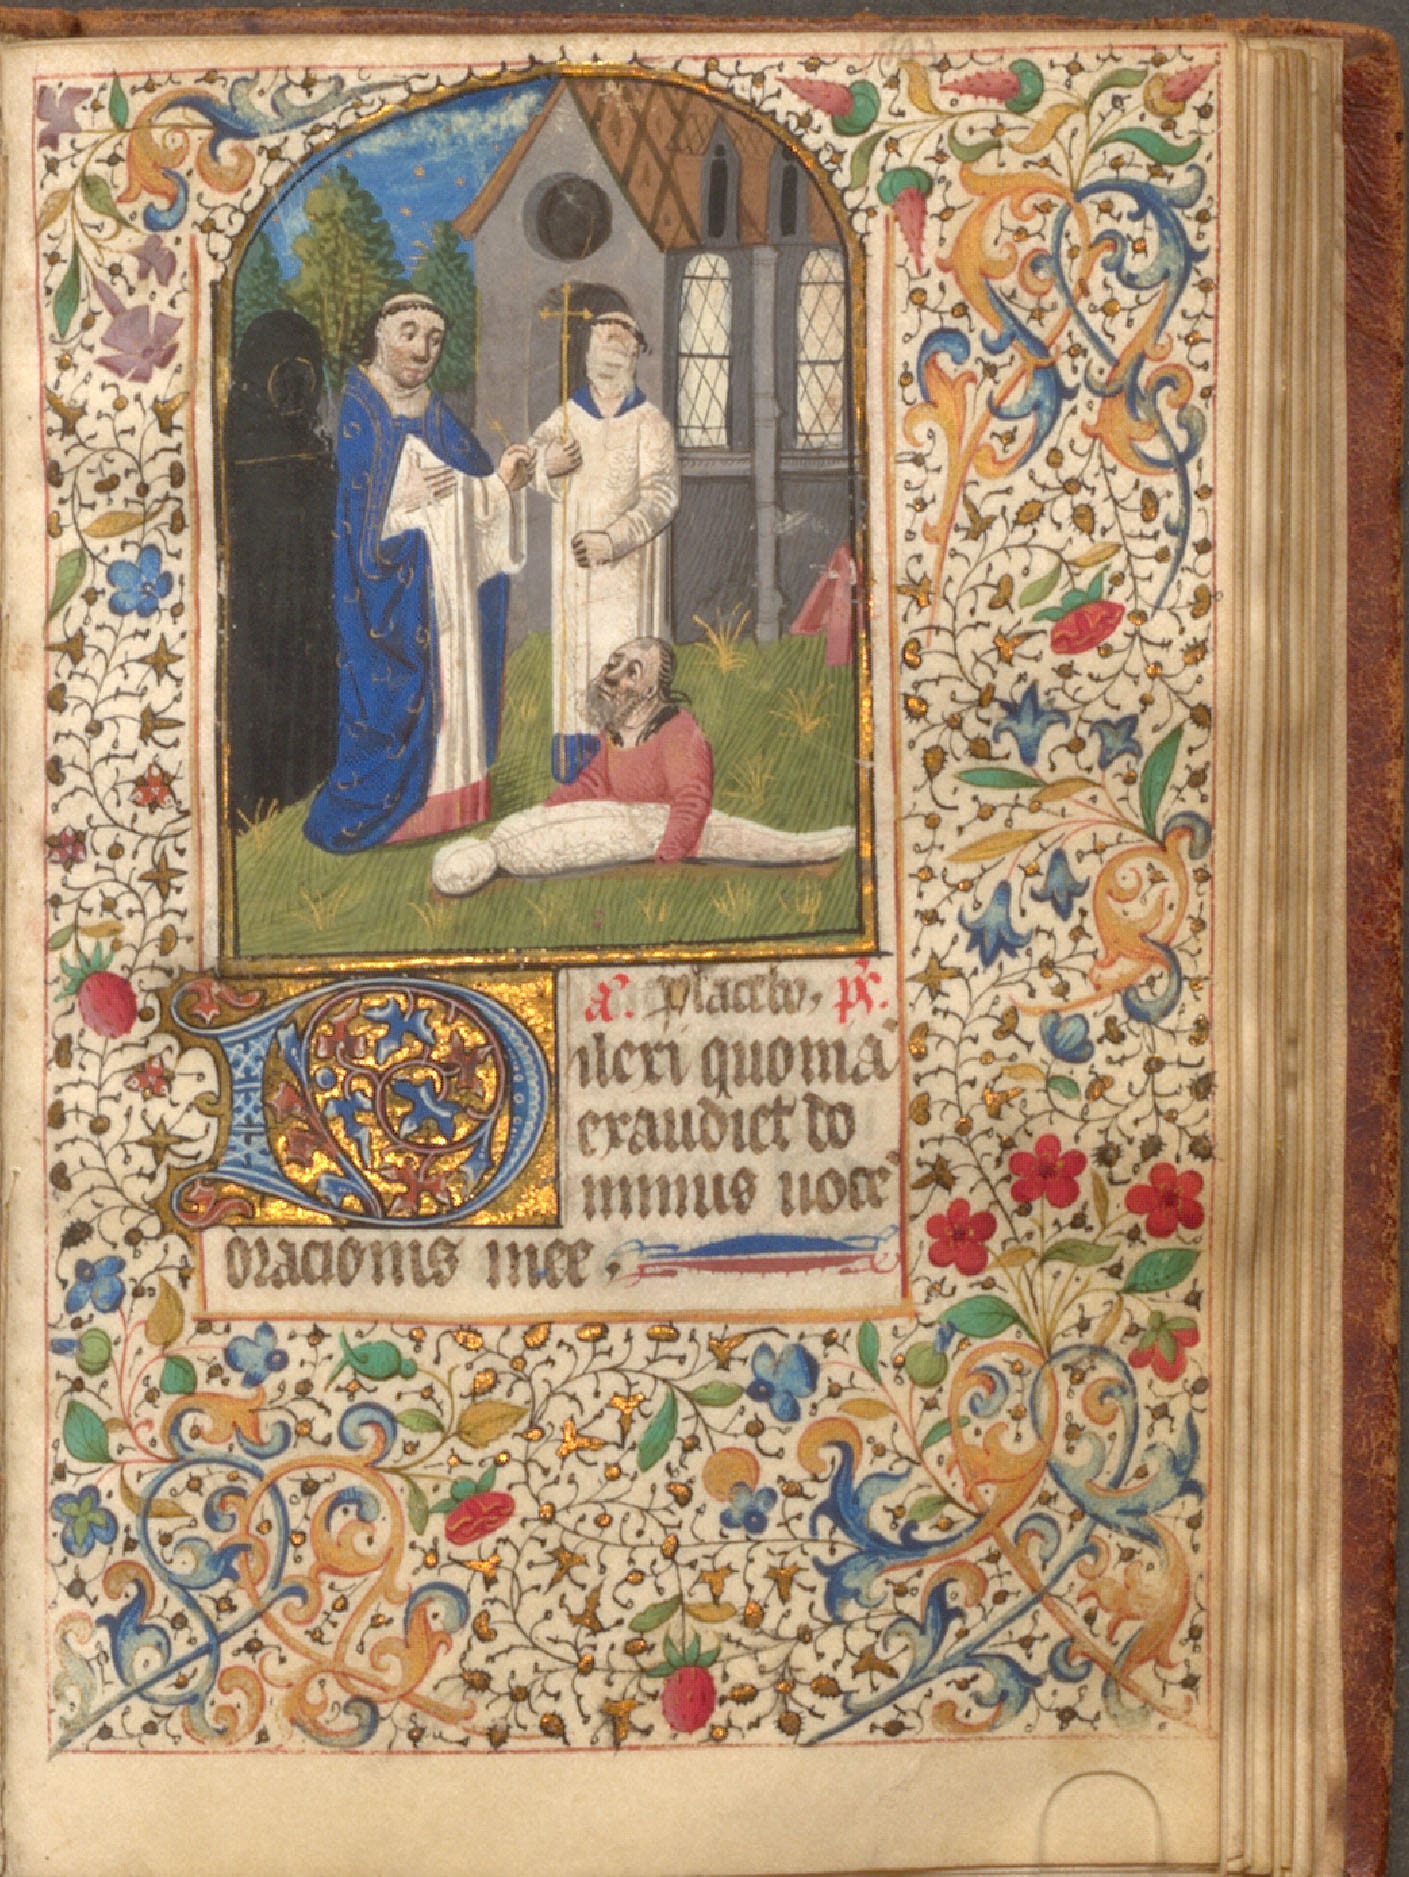 Seite aus "Horae Canonicae" aus der Markgräflichen Hausbibliothek Bayreuth